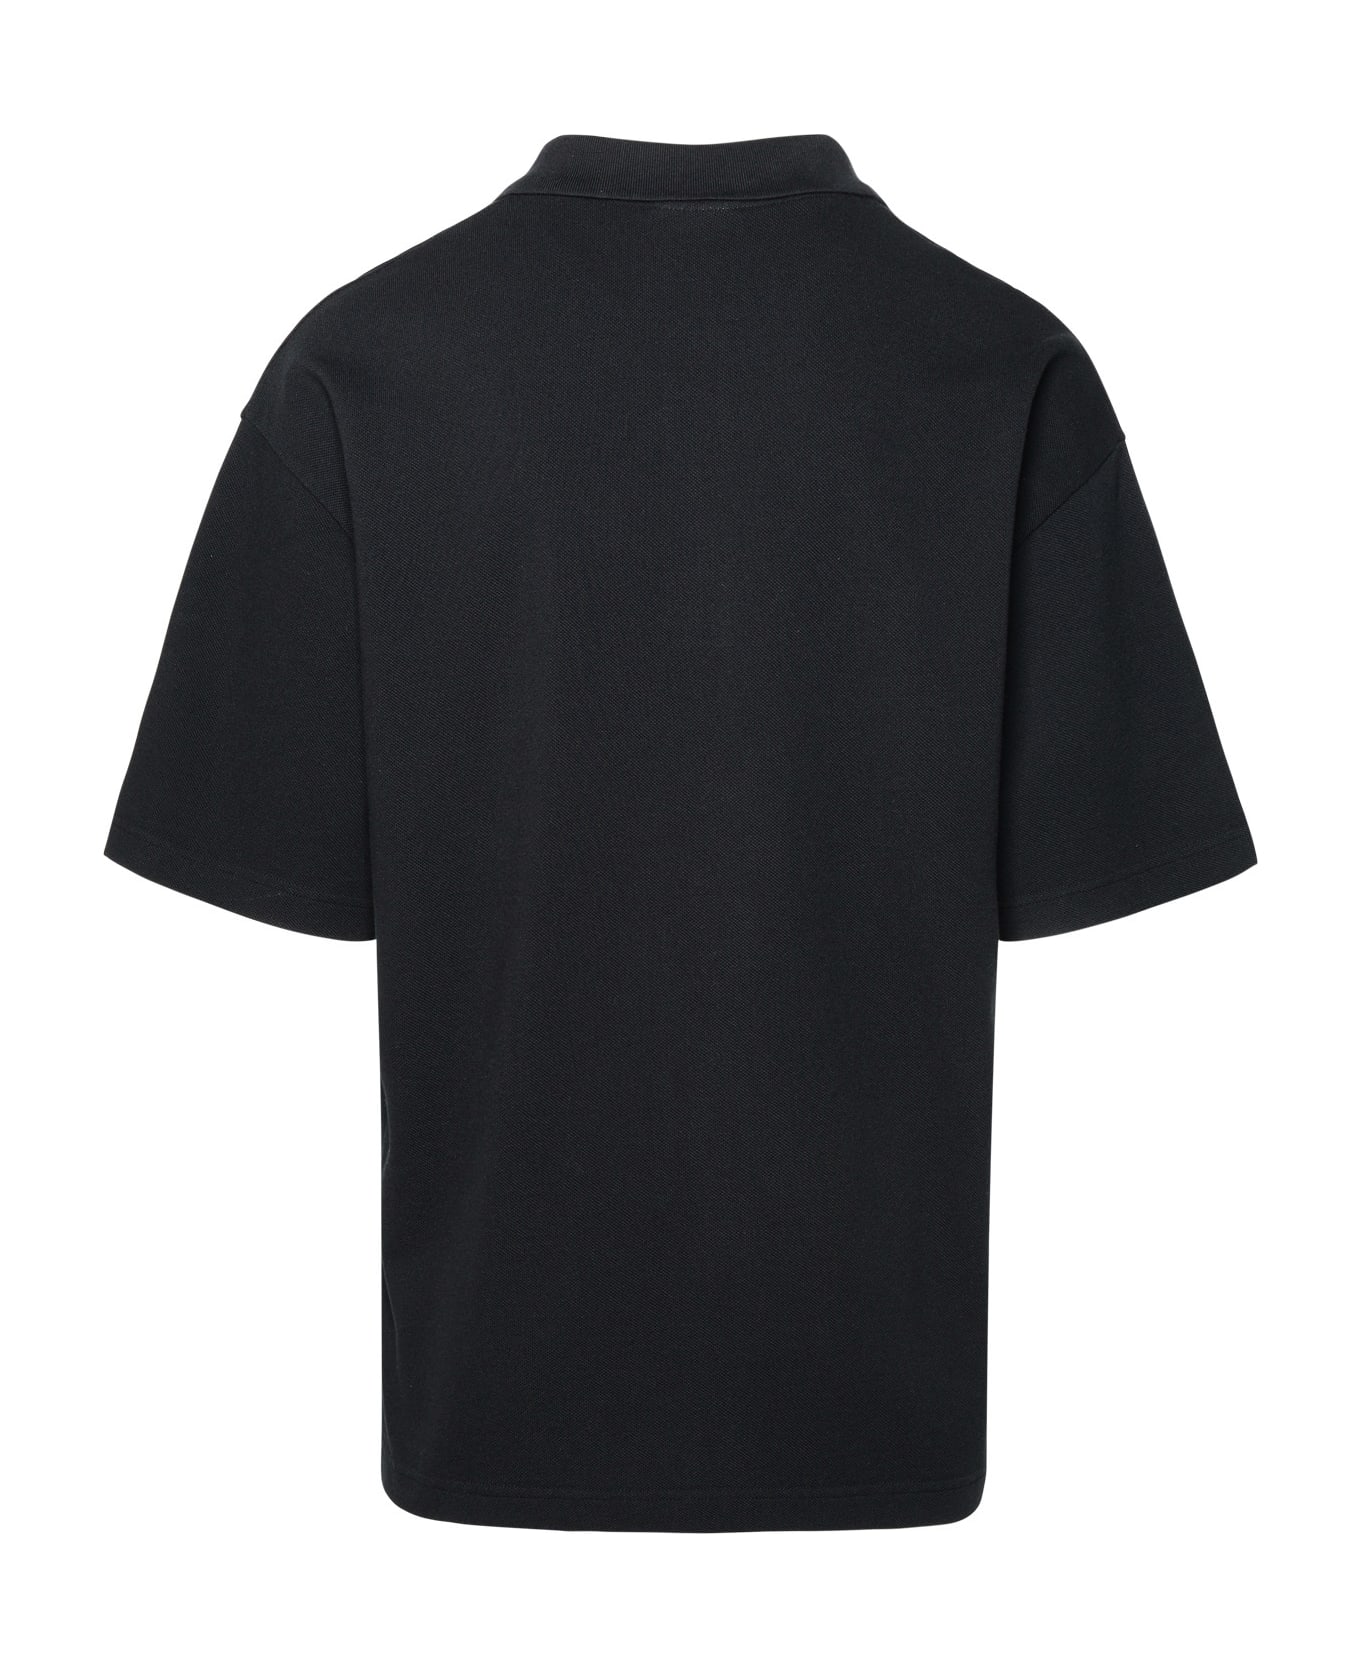 Maison Kitsuné Black Cotton Polo Shirt - P199 BLACK